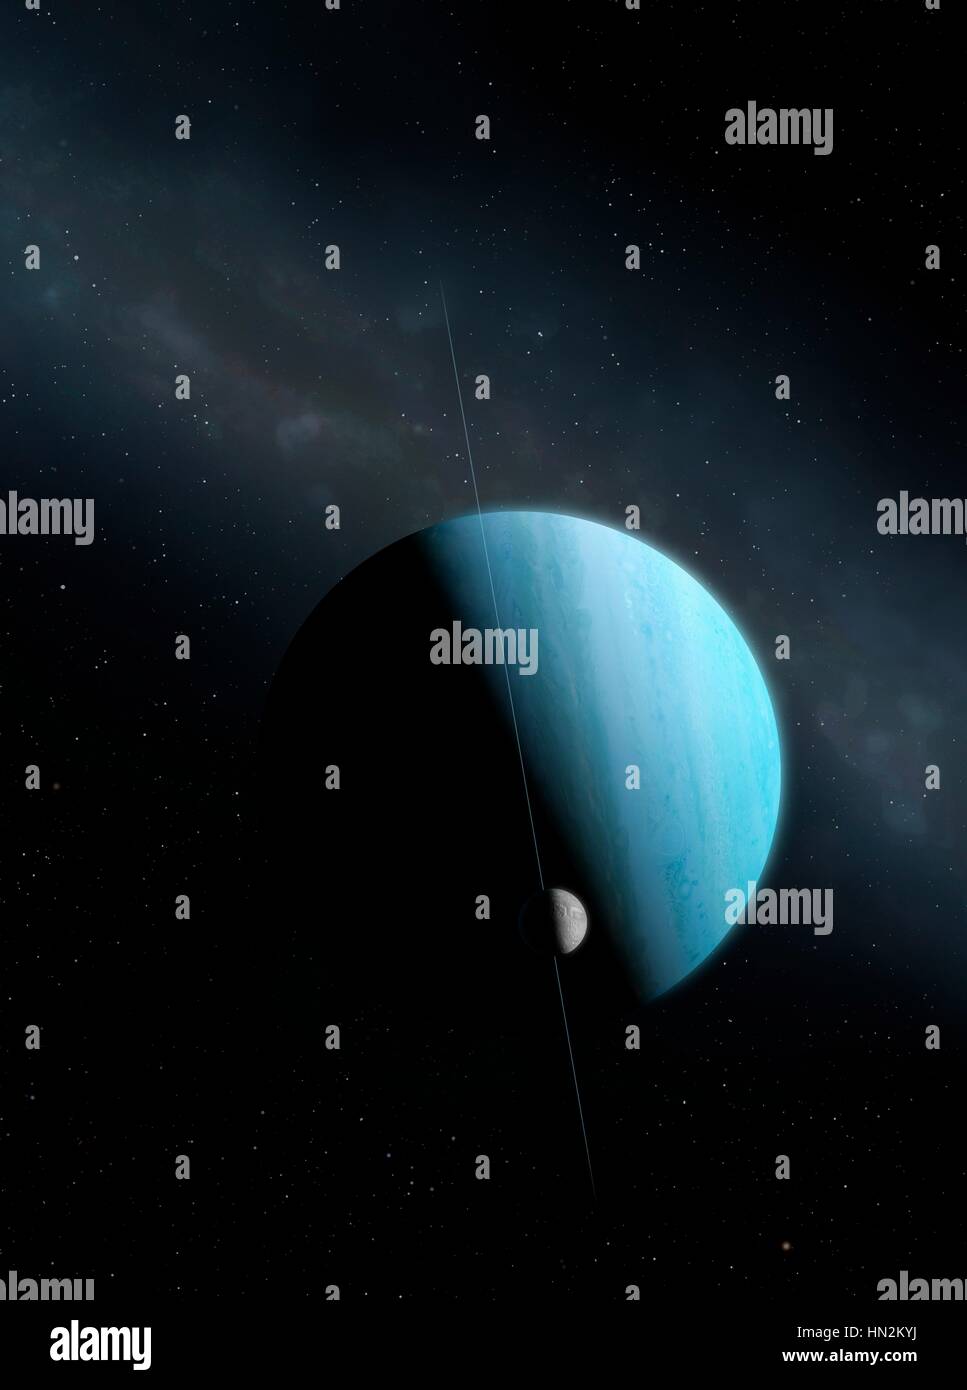 Une impression de l'Green ice planète géante, Uranus, et sa position de grande lune, la fracture de Miranda. Uranus est la septième planète par ordre de distance au Soleil, orbitant à une distance moyenne de 2,85 milliards de kilomètres, il est inhabituel en ce qu'il a une très pâle, presque sans relief, l'atmosphère et une inclinaison axiale près de 100 degrés. Miranda a surface impair y compris la plus haute falaise dans le système solaire connu suggère que le monde a été brisé en morceaux dans une collision et remonté plus tard. Banque D'Images